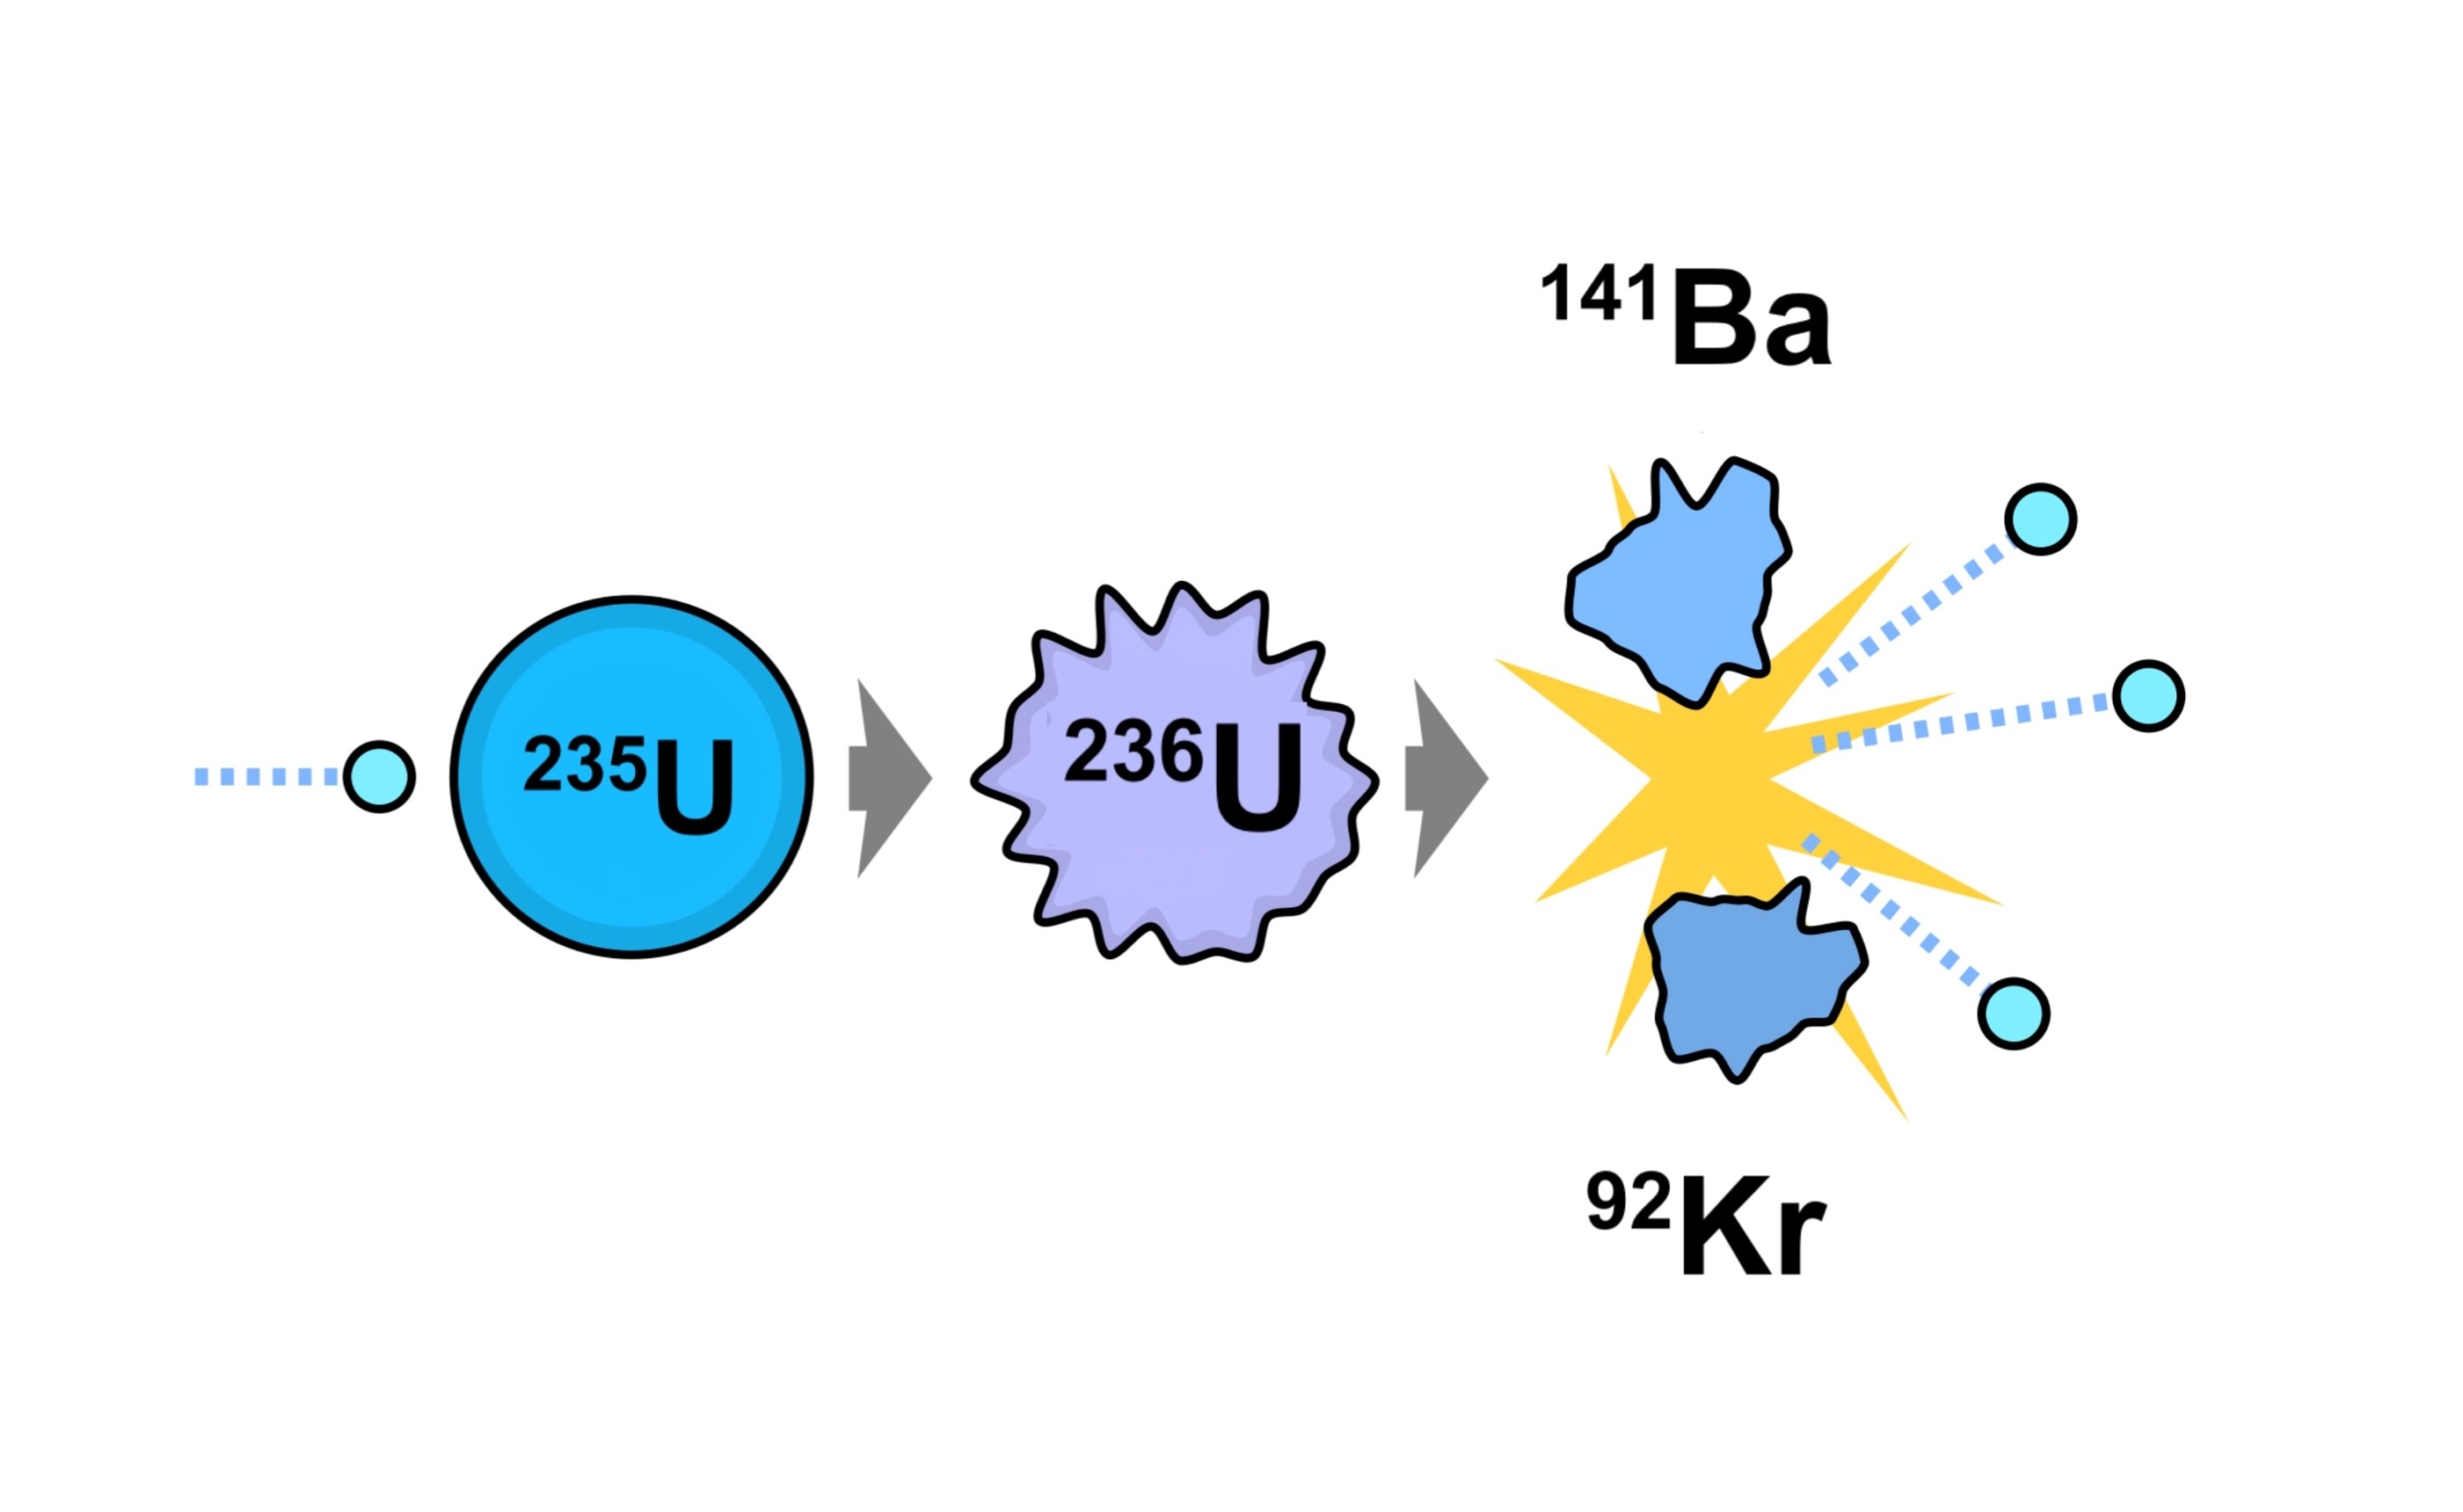 Ланцуговая рэакцыя "Уран-235", якая адначасова вядзе да [-] ядзернай бомбы расшчаплення, але адначасова генеруе энергію ўнутры ядзернага рэактара, забяспечваецца паглынаннем нейтронаў у якасці першага кроку, што прыводзіць да выпрацоўкі трох дадатковых свабодных нейтронаў. E. SIEGEL, FASTFISSION / WIKIMEDIA ЗВЫЧАЙНЫЯ